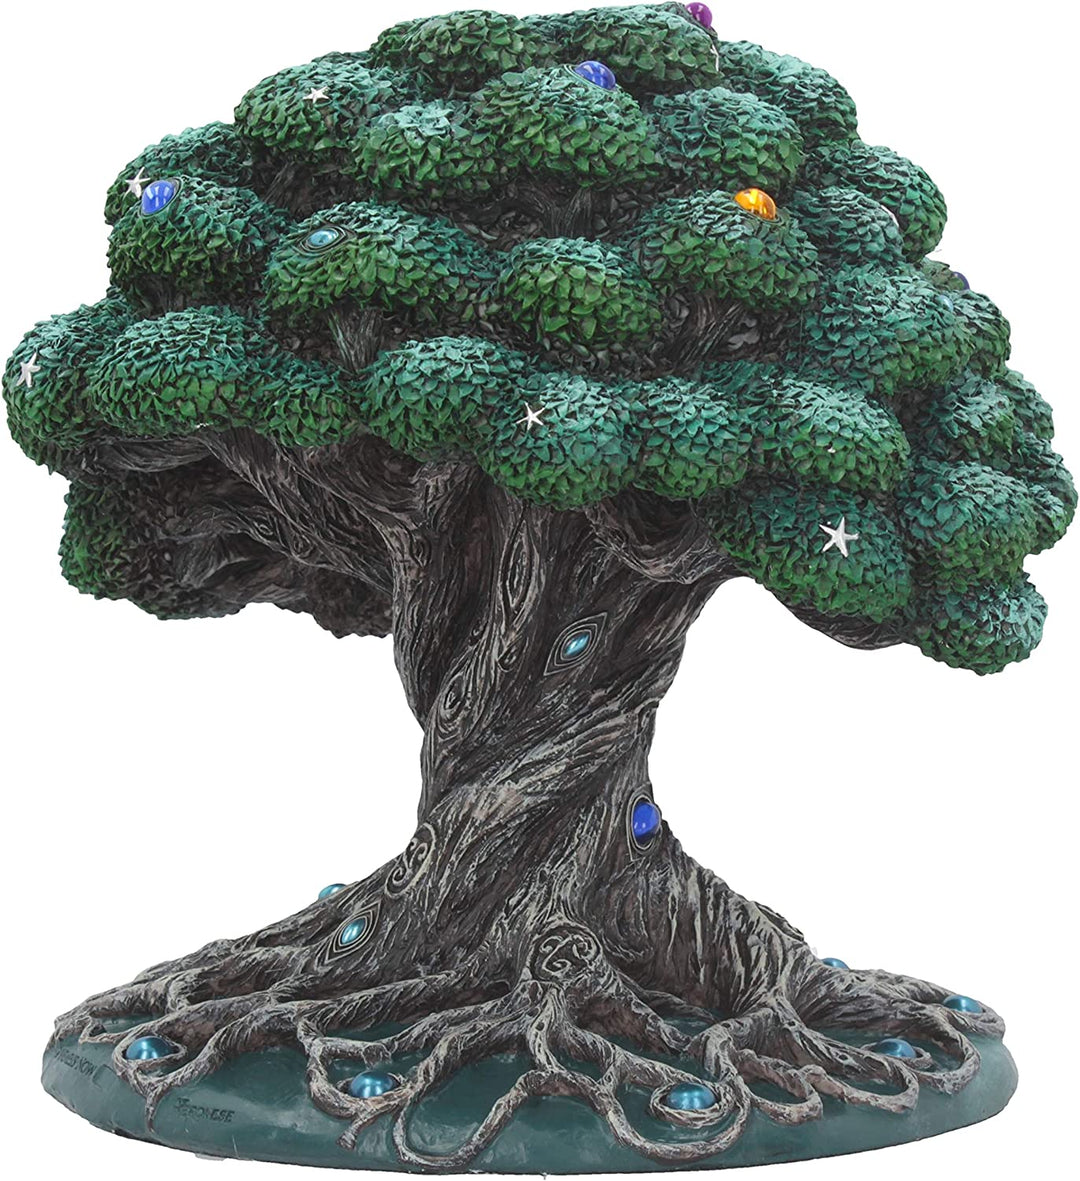 Nemesis Now Baum des Lebens Figur 22 cm grün